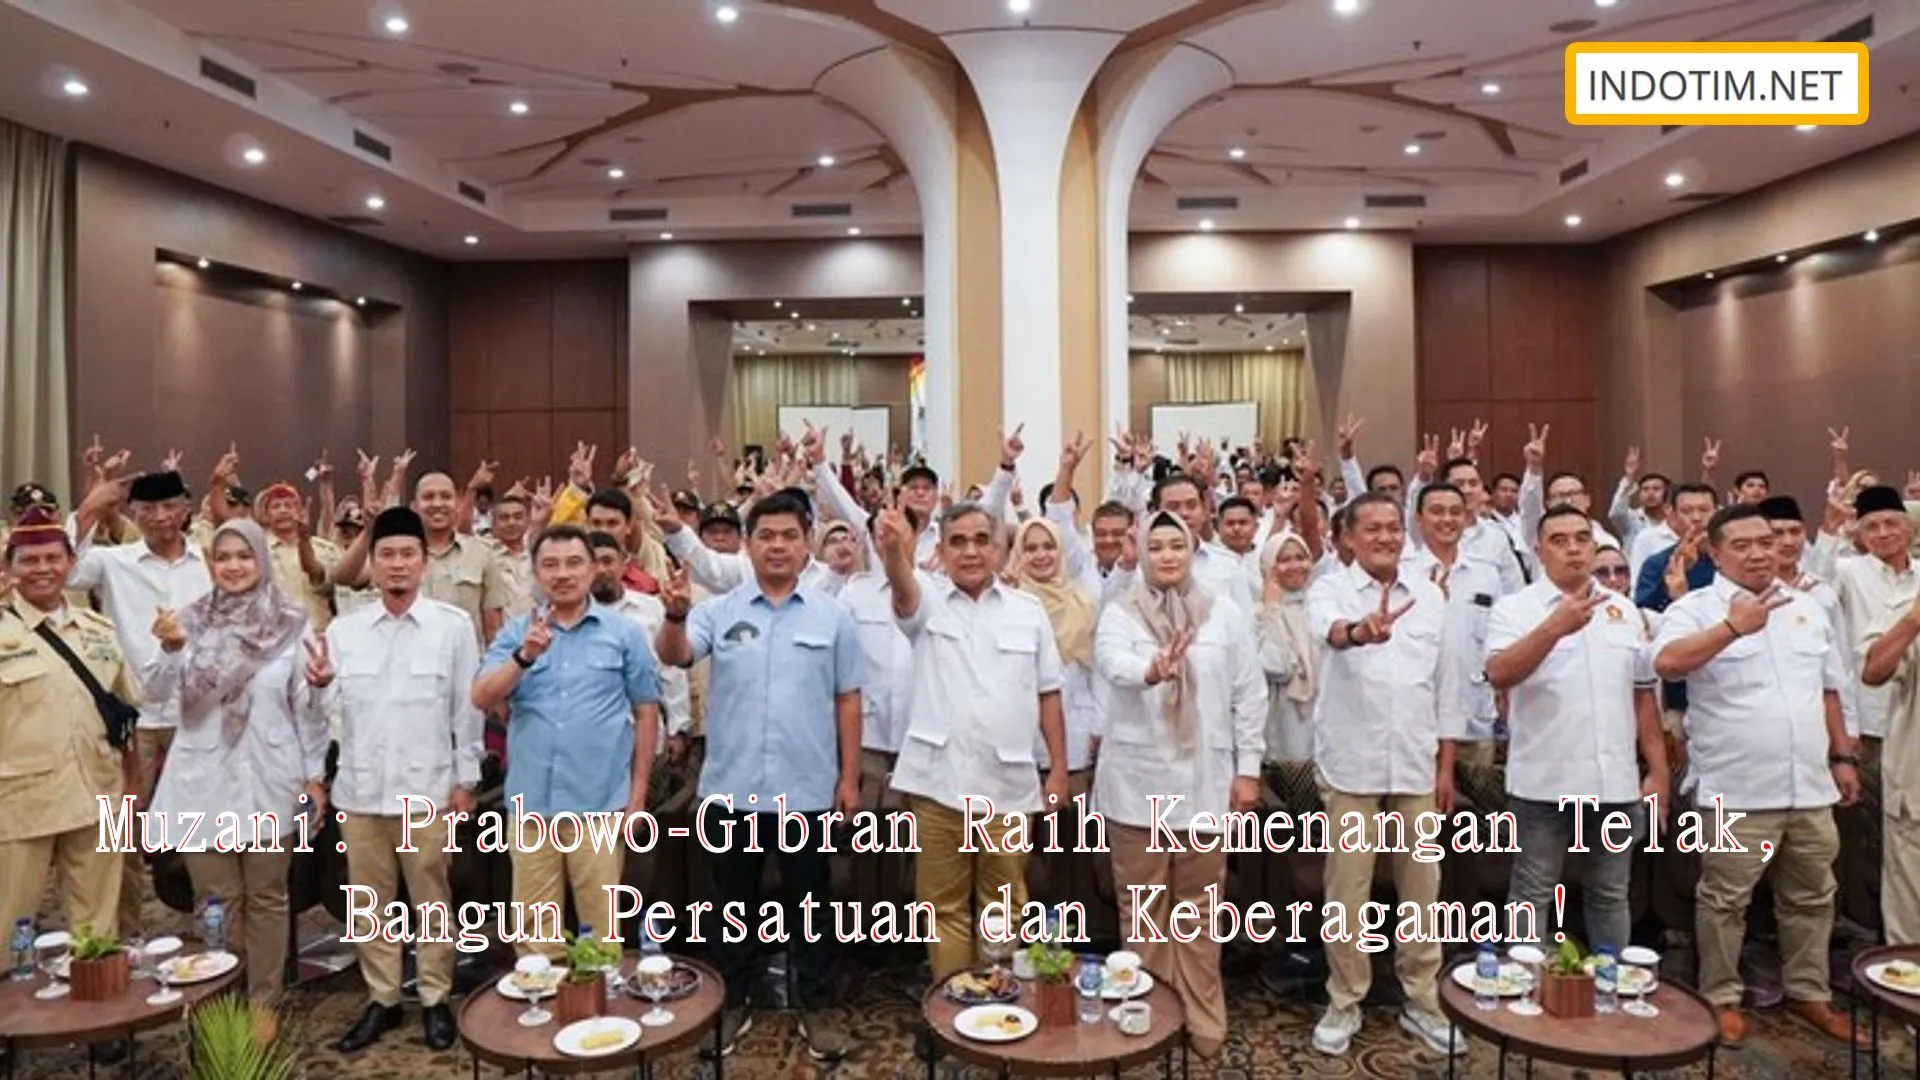 Muzani: Prabowo-Gibran Raih Kemenangan Telak, Bangun Persatuan dan Keberagaman!